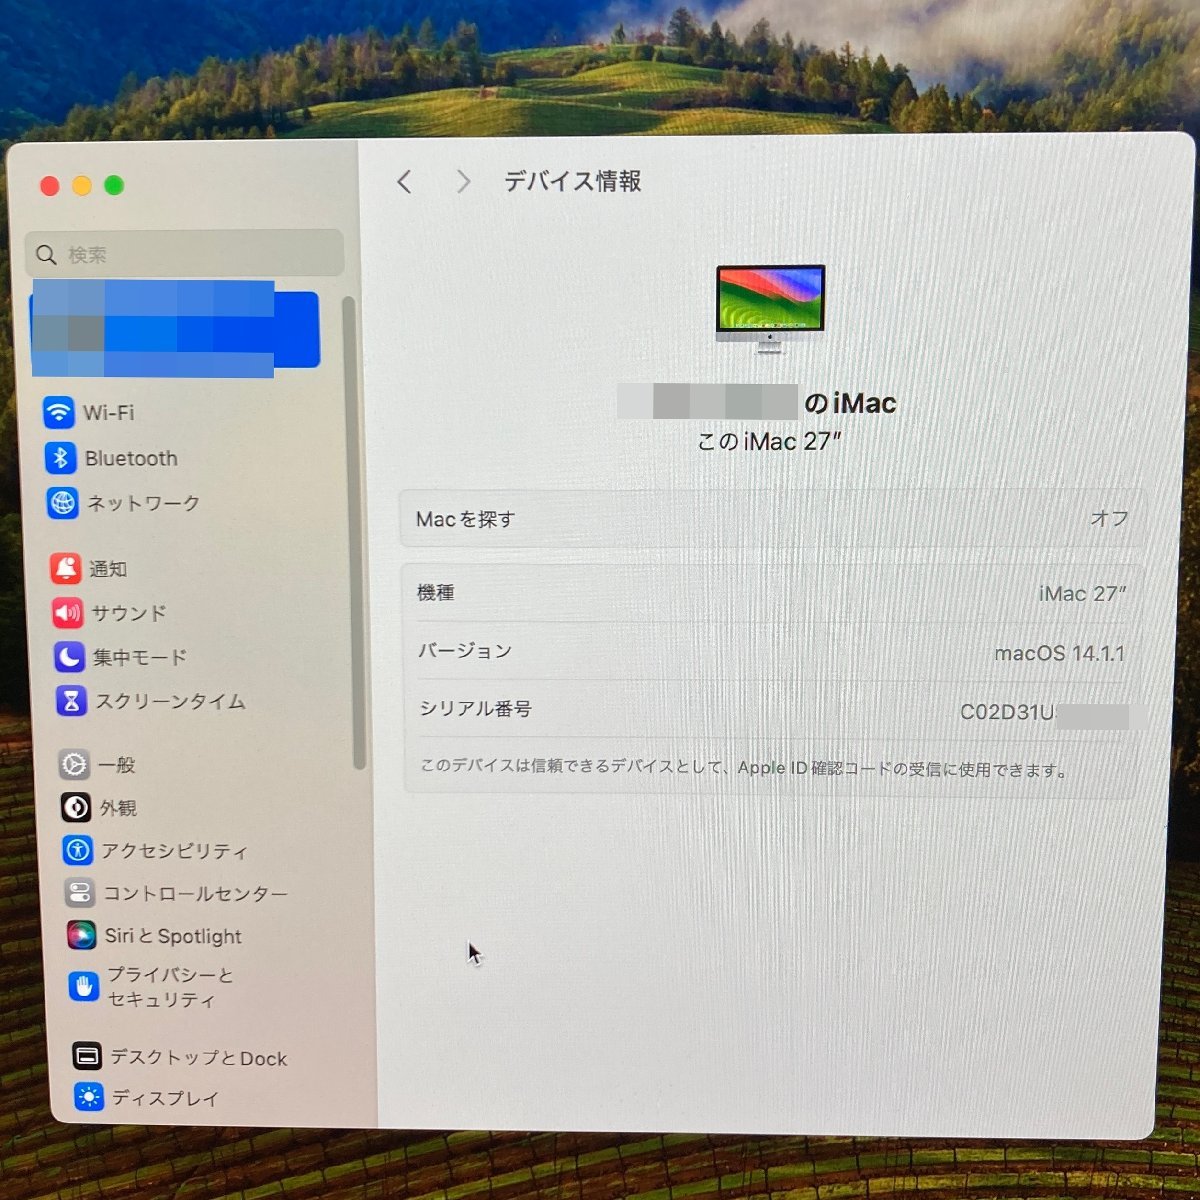 Apple アップル iMac A2115 メモリ8GB ストレージ1.03TB モニターサイズ27インチ macOS Sonoma バージョン14.11　初期化済　キーボード不調_初期化前の画面です。現在初期化済